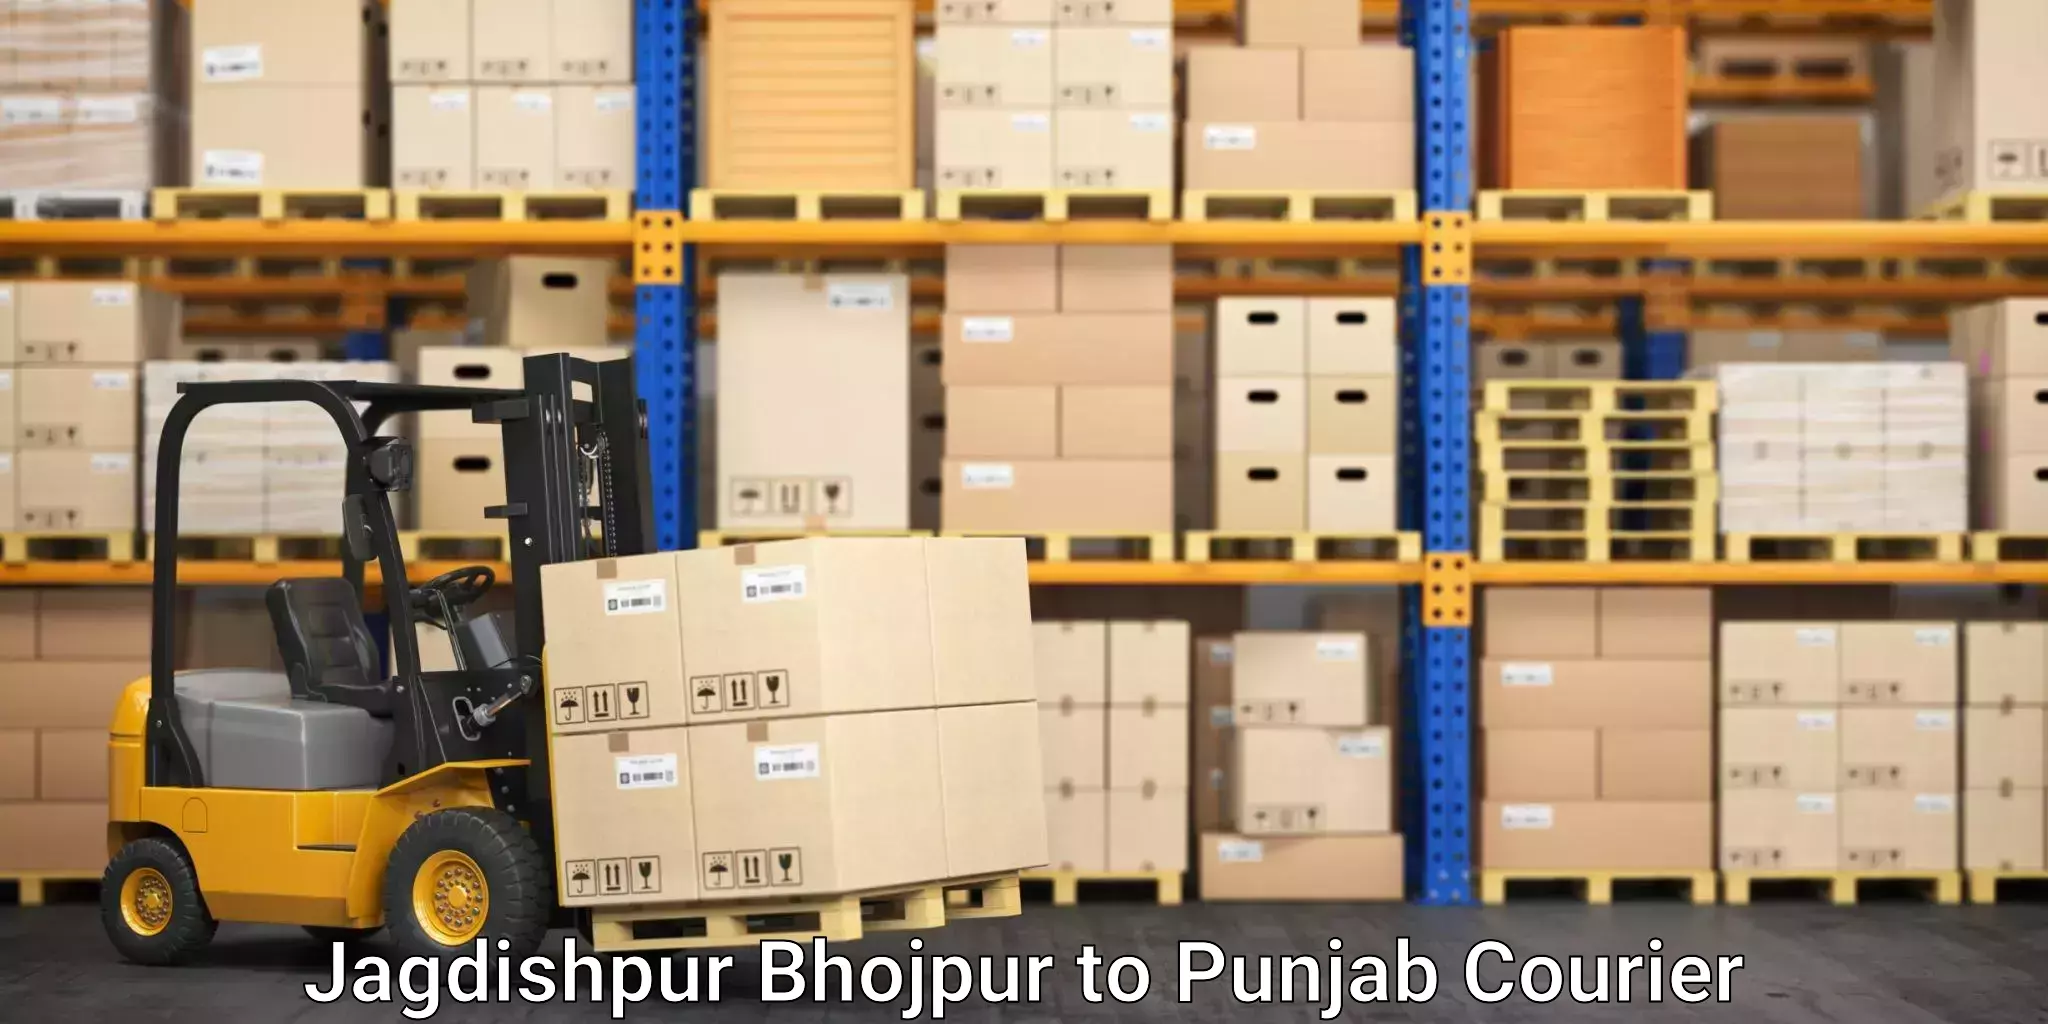 Furniture transport company Jagdishpur Bhojpur to Fazilka